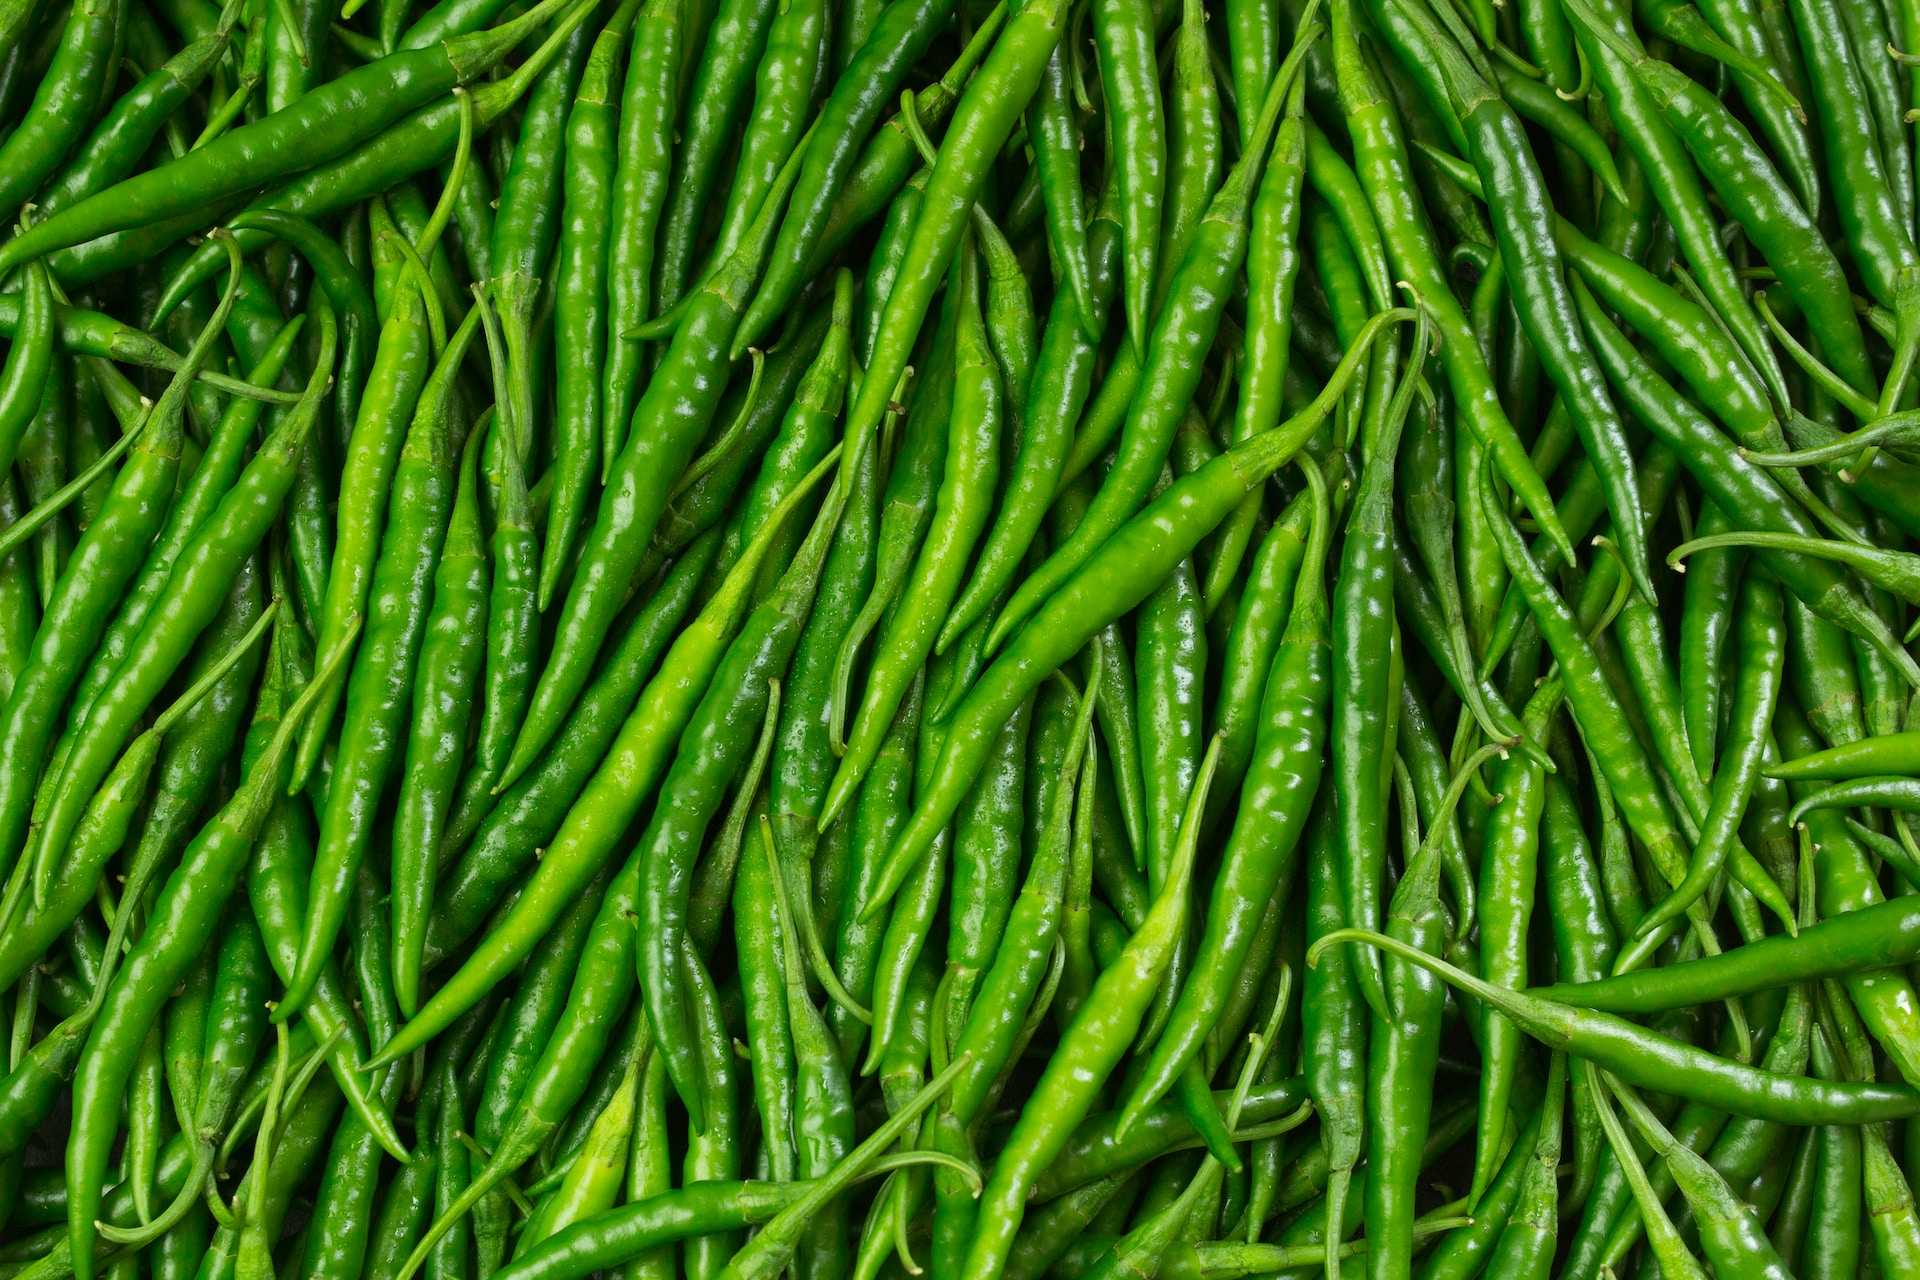 /media/tips/images/green-chili-pepper-farming-2023.jpg